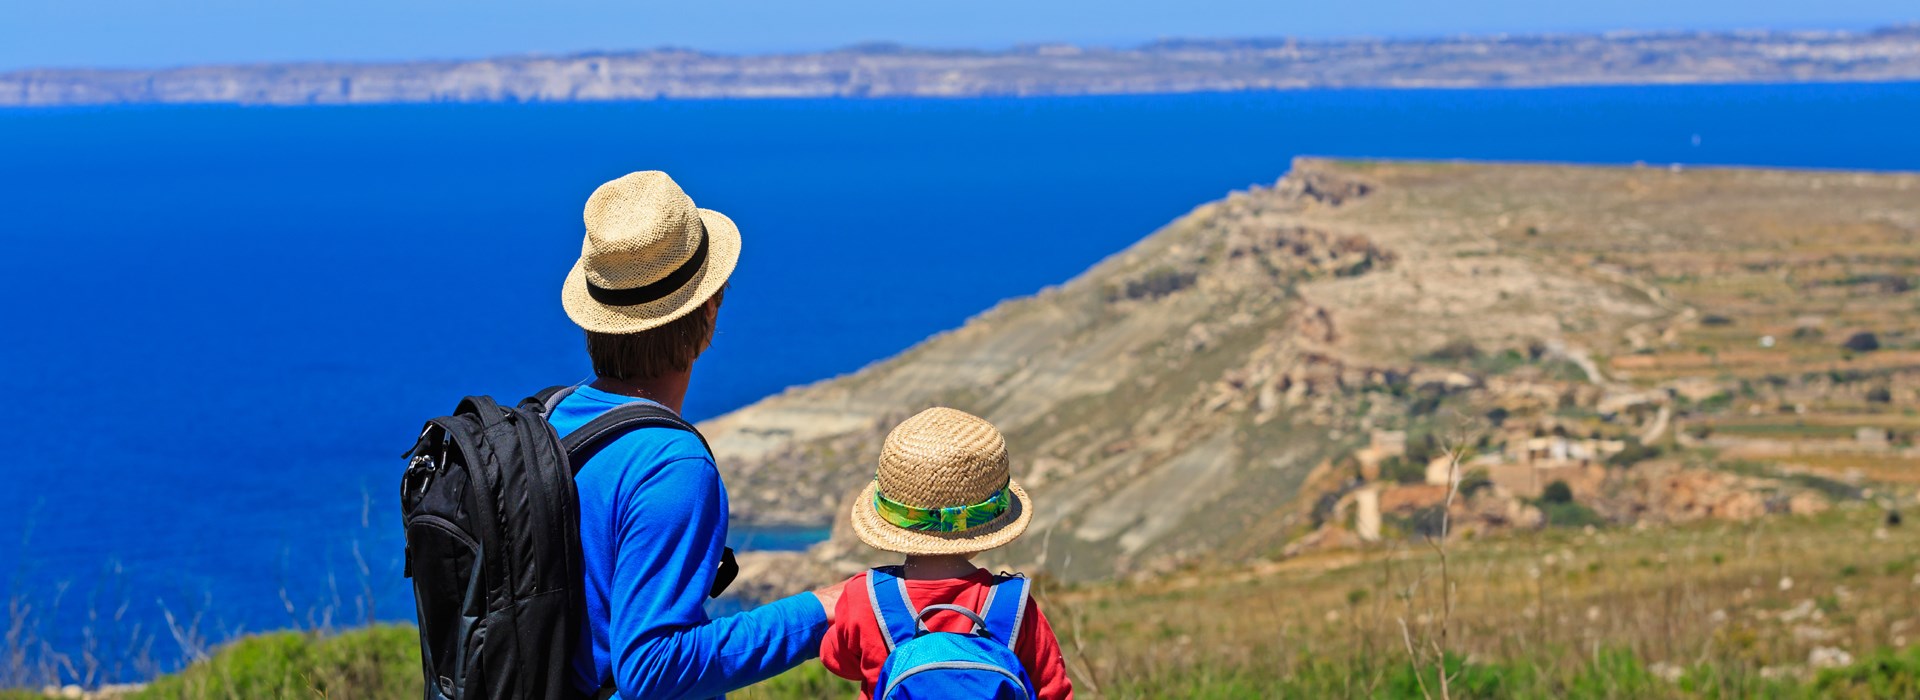 Les meilleures destinations estivales pour les parents solo voyageant avec leurs enfants